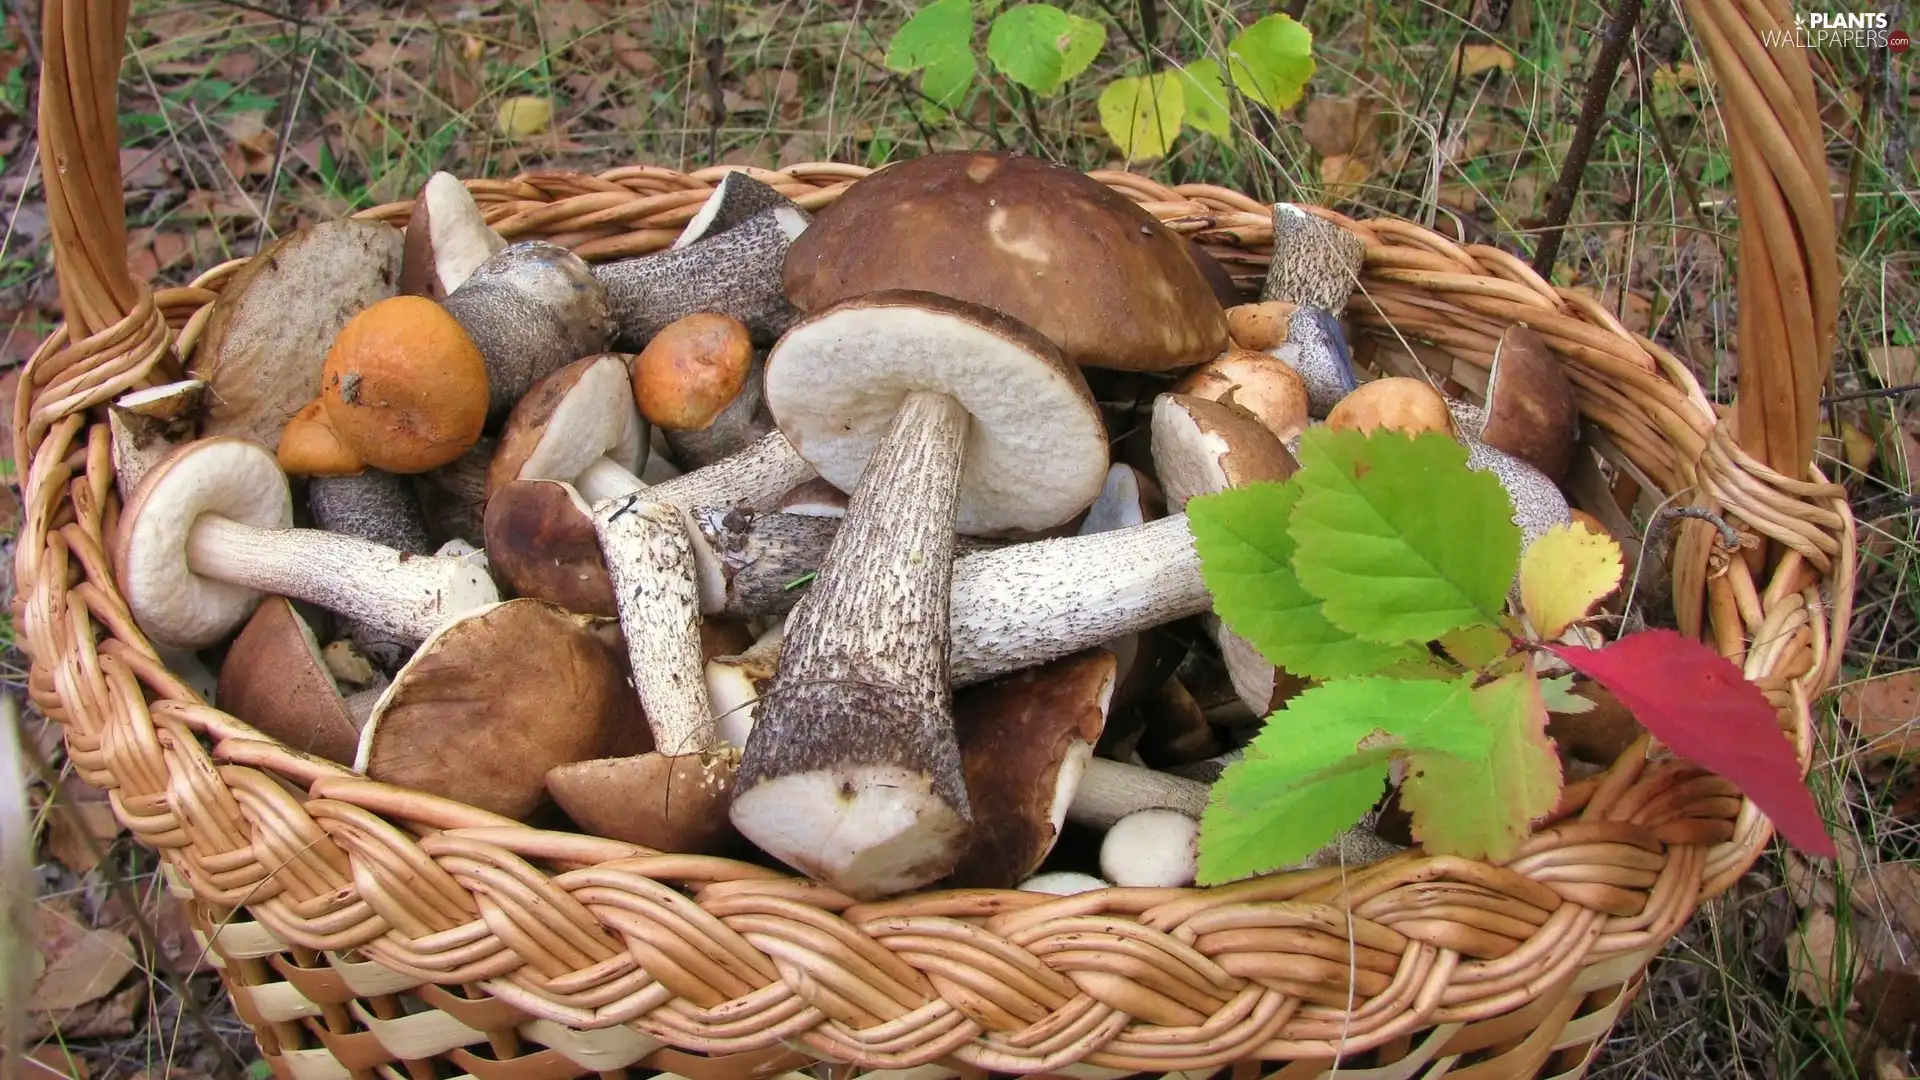 Autumn, Leaf, mushrooms, forest, basket